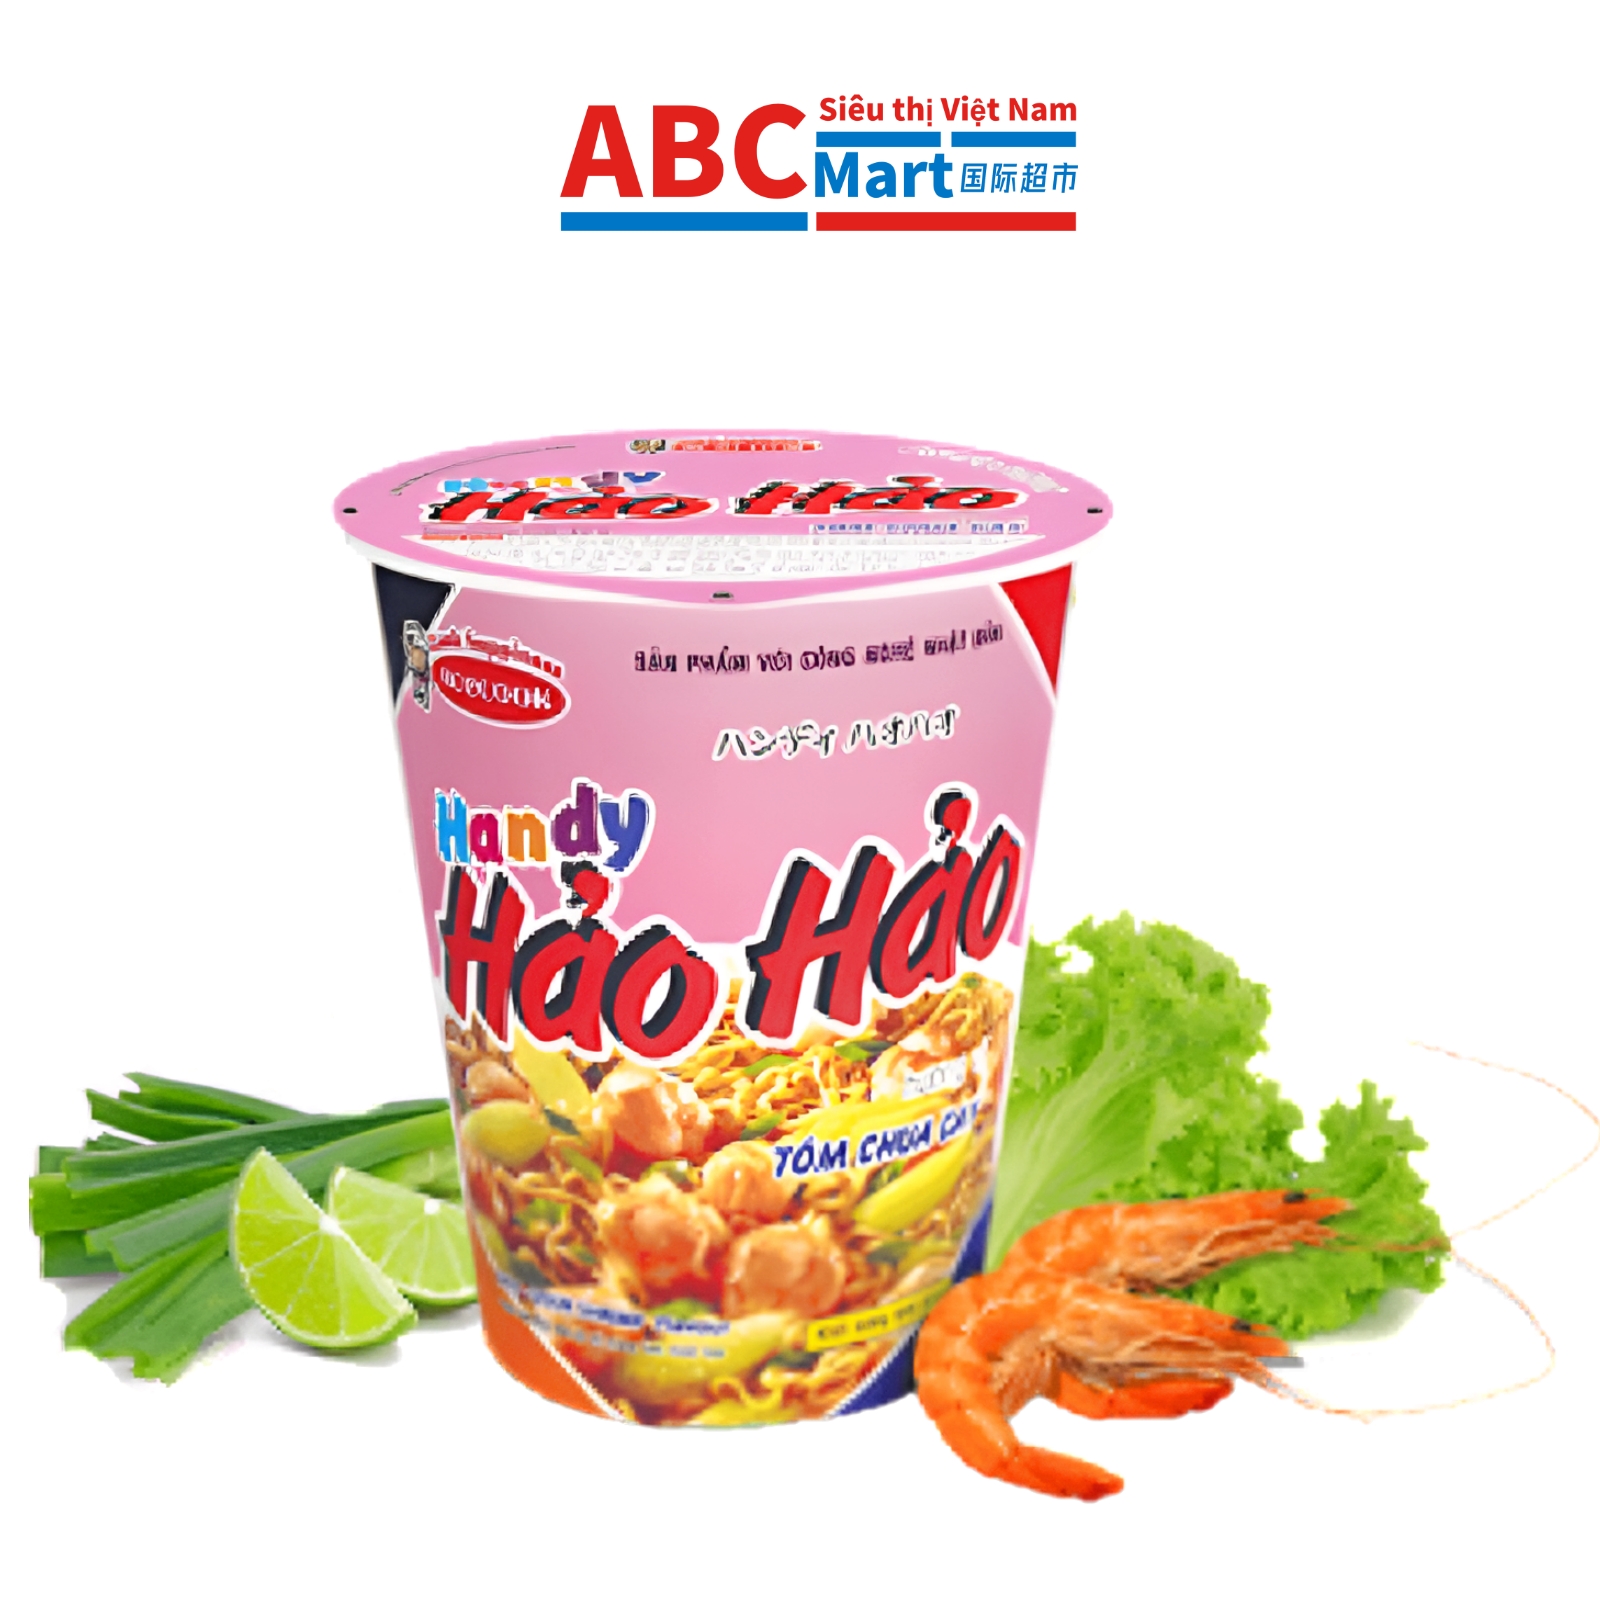 【Việt Nam-Mì Handy Hảo Hảo tôm chua cay ly 67g】越南好好酸辣虾方便面杯装-ABCMart 国际超市